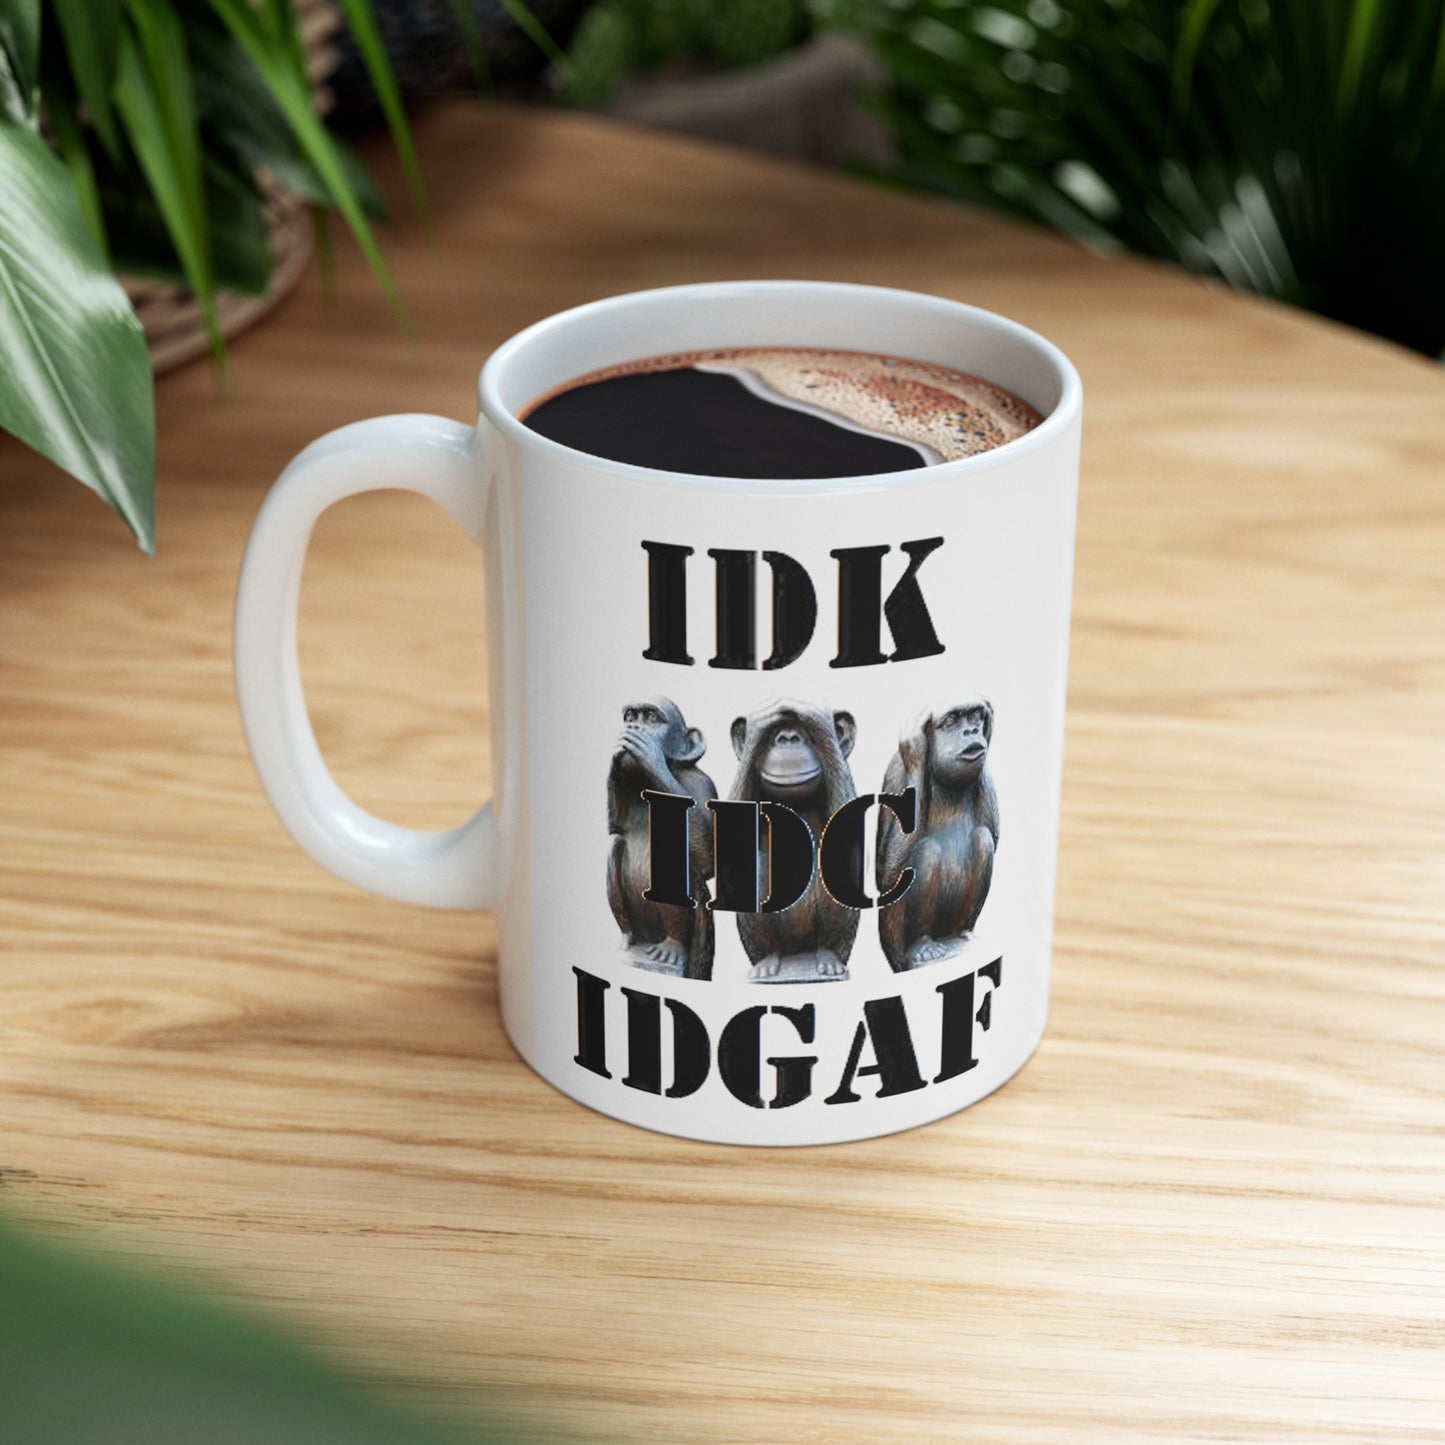 Three Monkeys - IDK, IDC, IFGAF 11oz Ceramic Mug